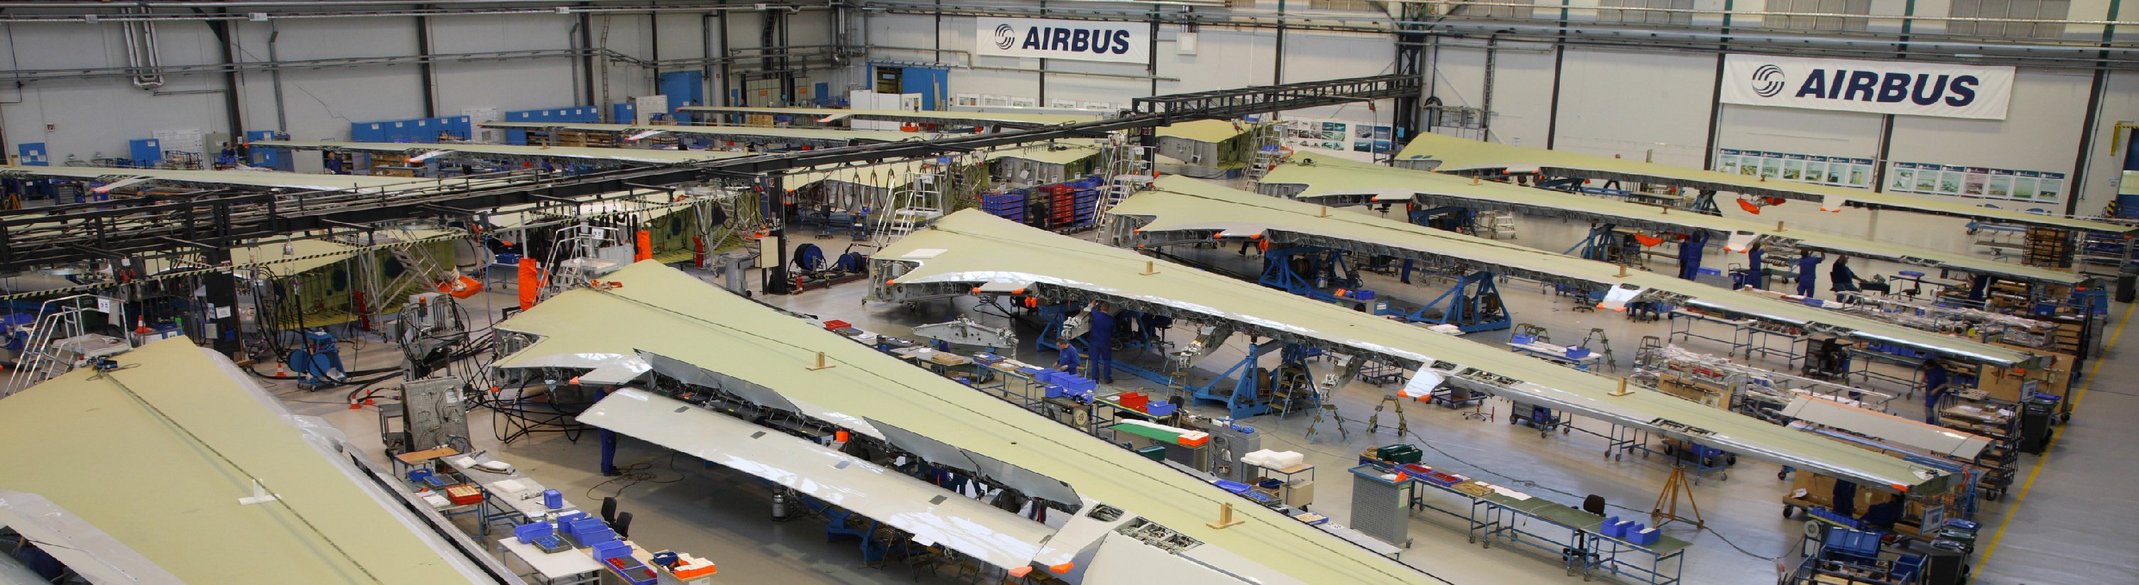 Materialmanagement-Logistiksystem für die Erfassung und Lagerung der Airbus A350 Flügelsektion